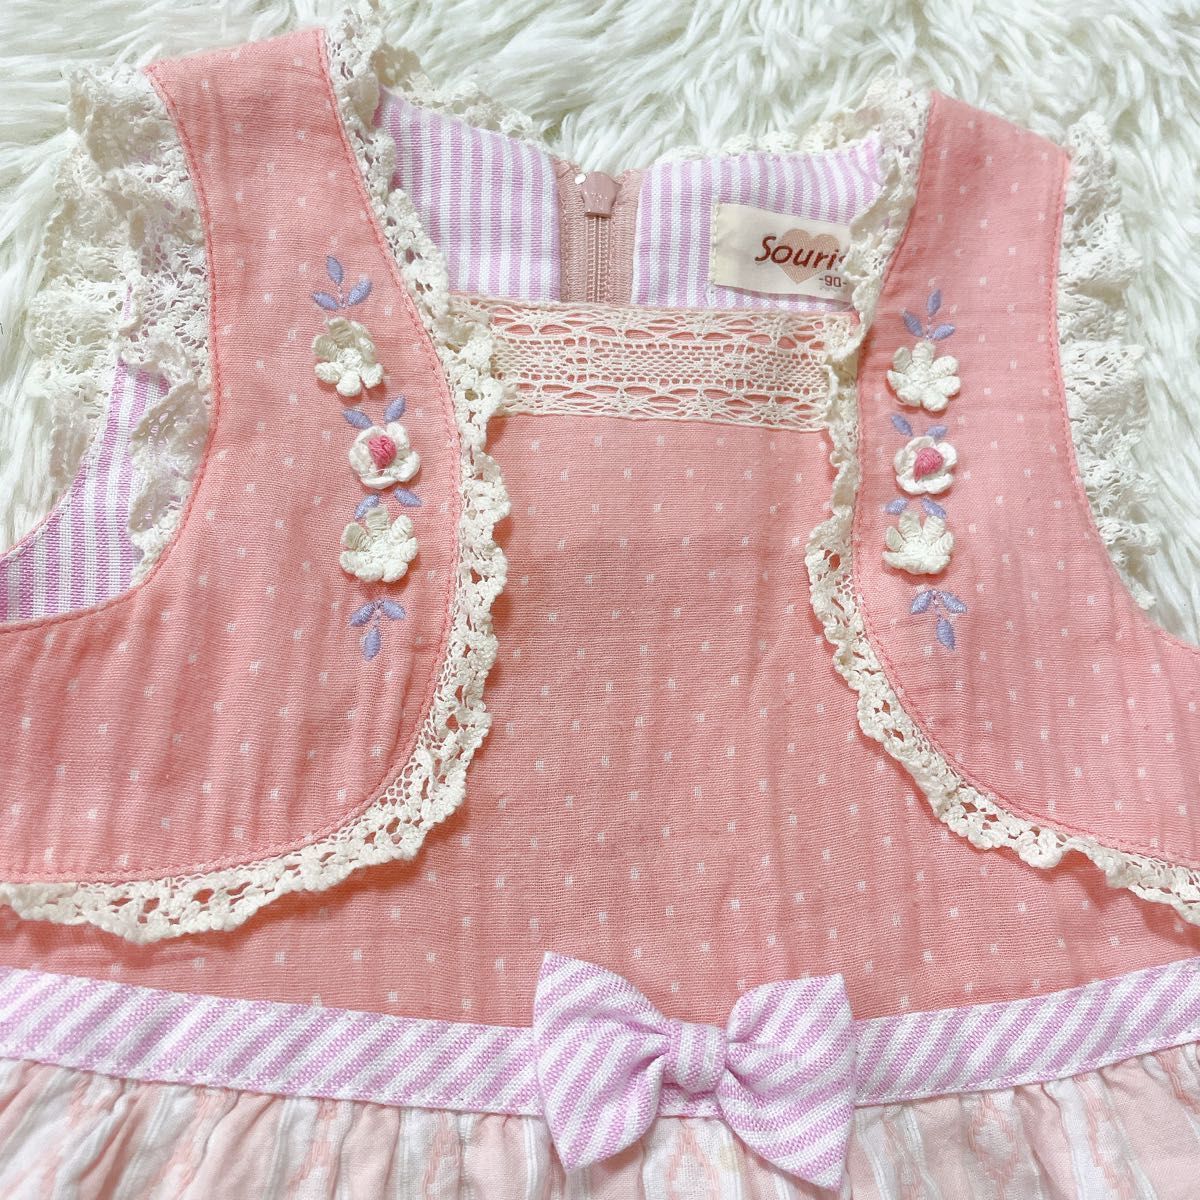 souris 90 ワンピース ミルキースーツ 女の子 夏服 子供服 スーリー ピンク ジャンパースカート キッズ ノースリーブの画像2